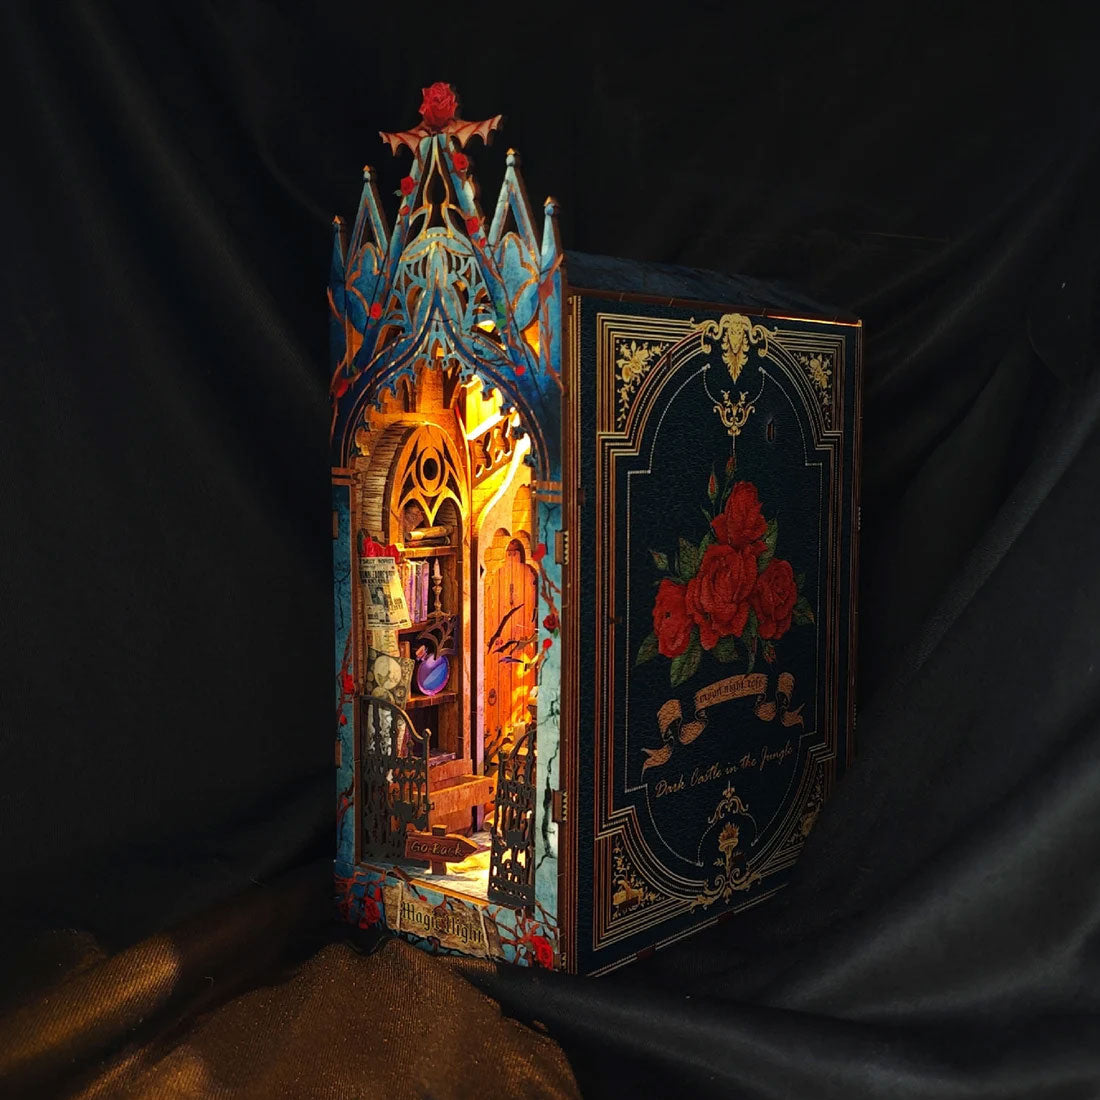 Twilight Castle 3D Wooden Puzzle Book Nook